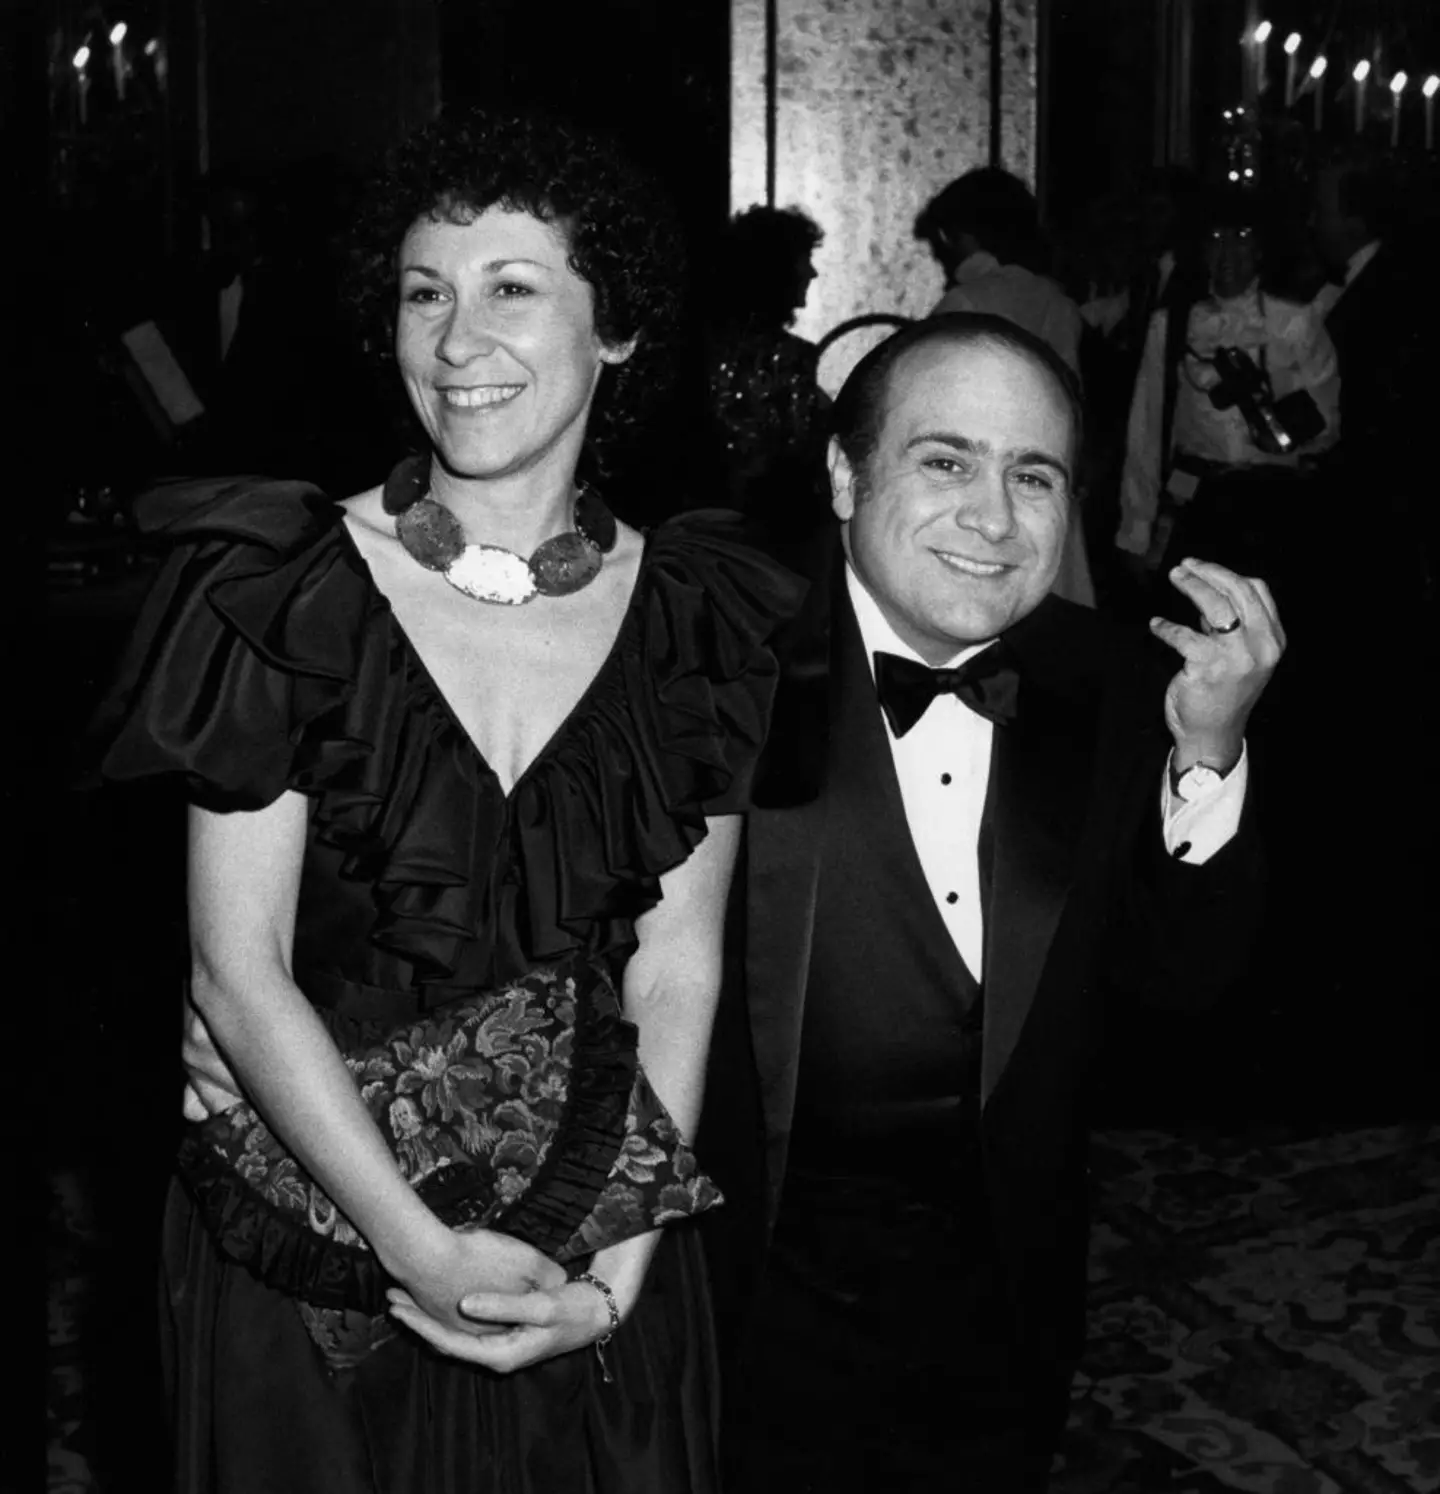 Danny DeVito and Rhea Perlman in 1982.